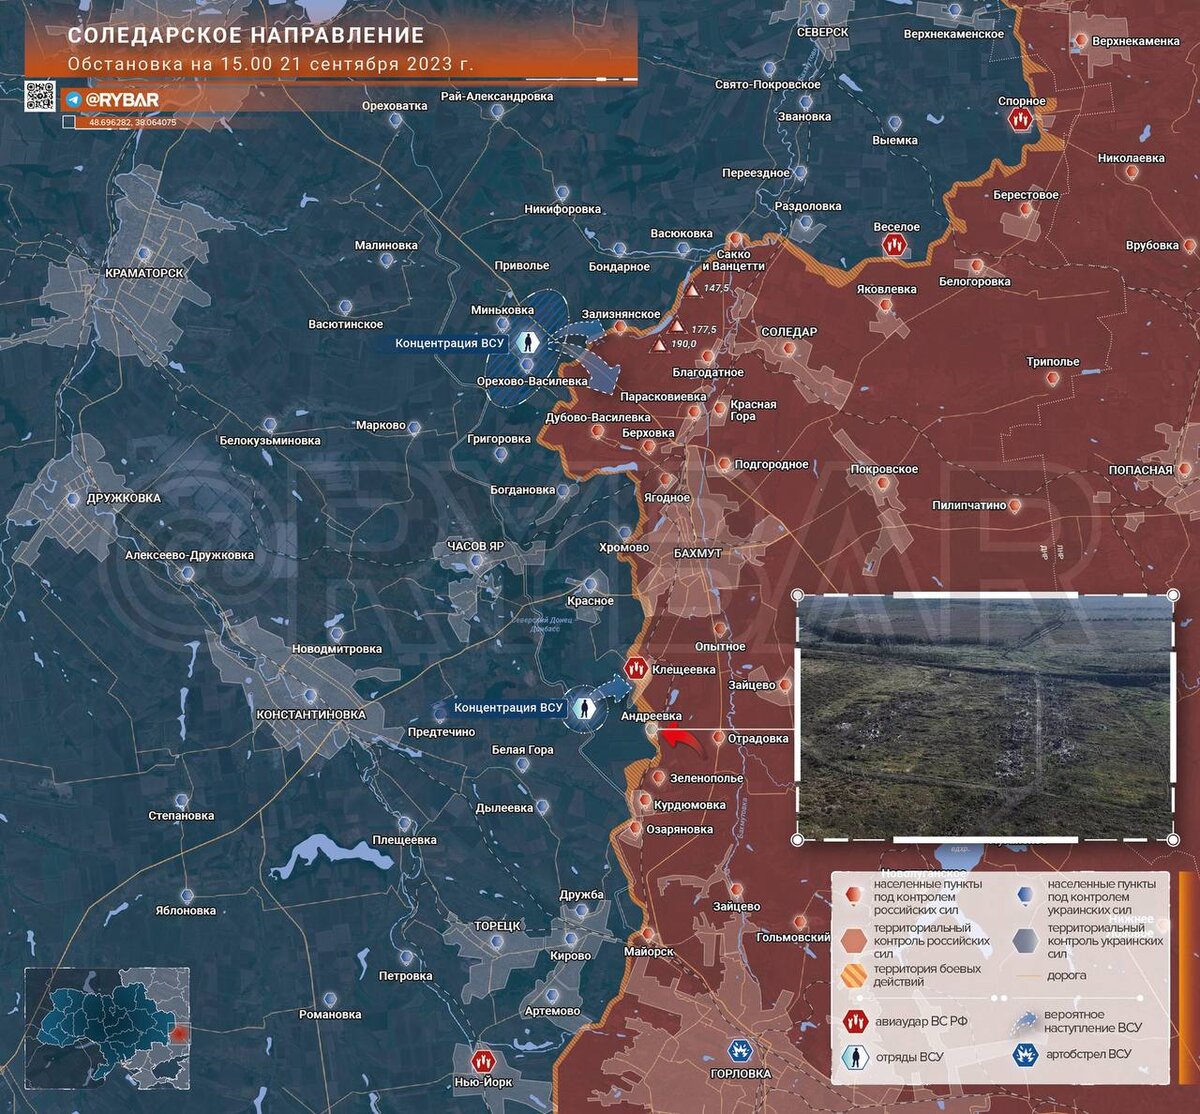 Карта боевых действий сегодня 21.09.2023 в реальном времени на 15:00 наУкраине. Соледарское направление: Андреевка.